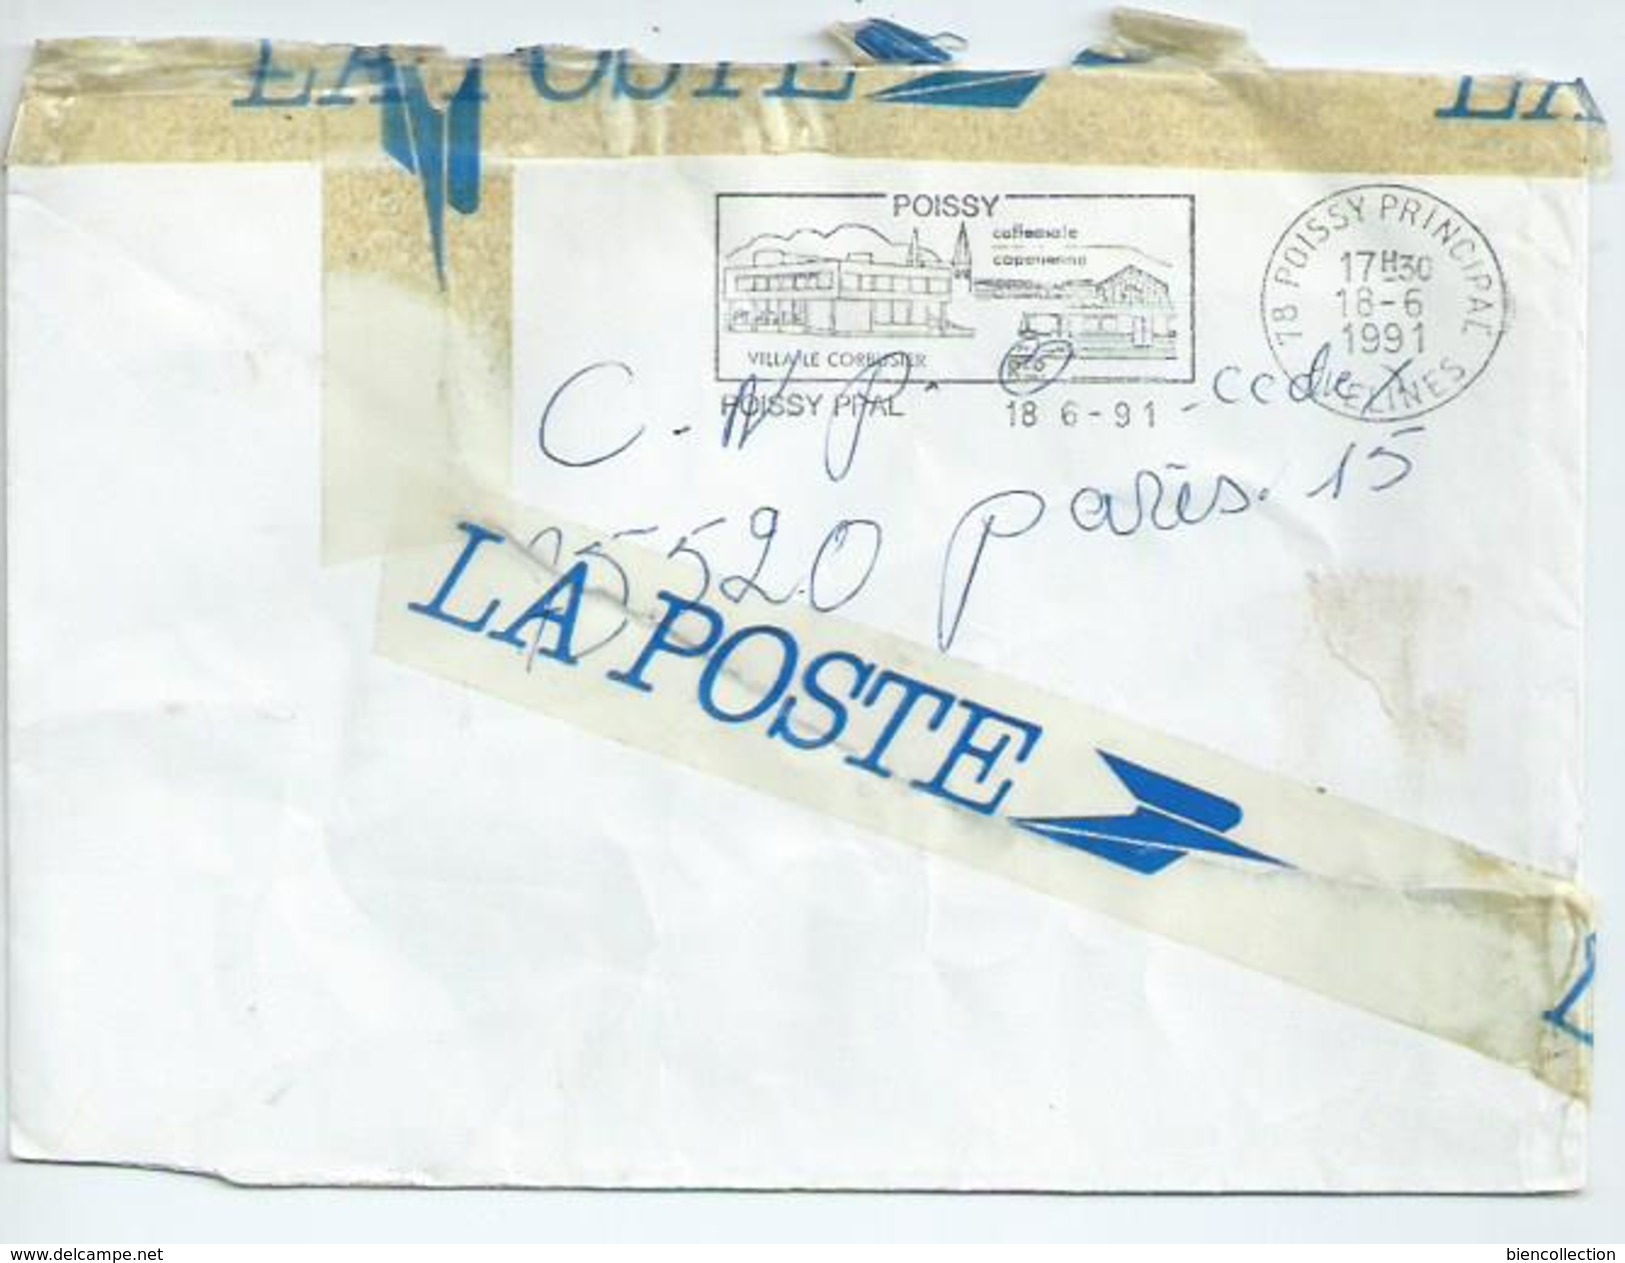 Courrier Accidenté Dans Les Services Postaux.Paris Chèque Postaux - Lettres Accidentées